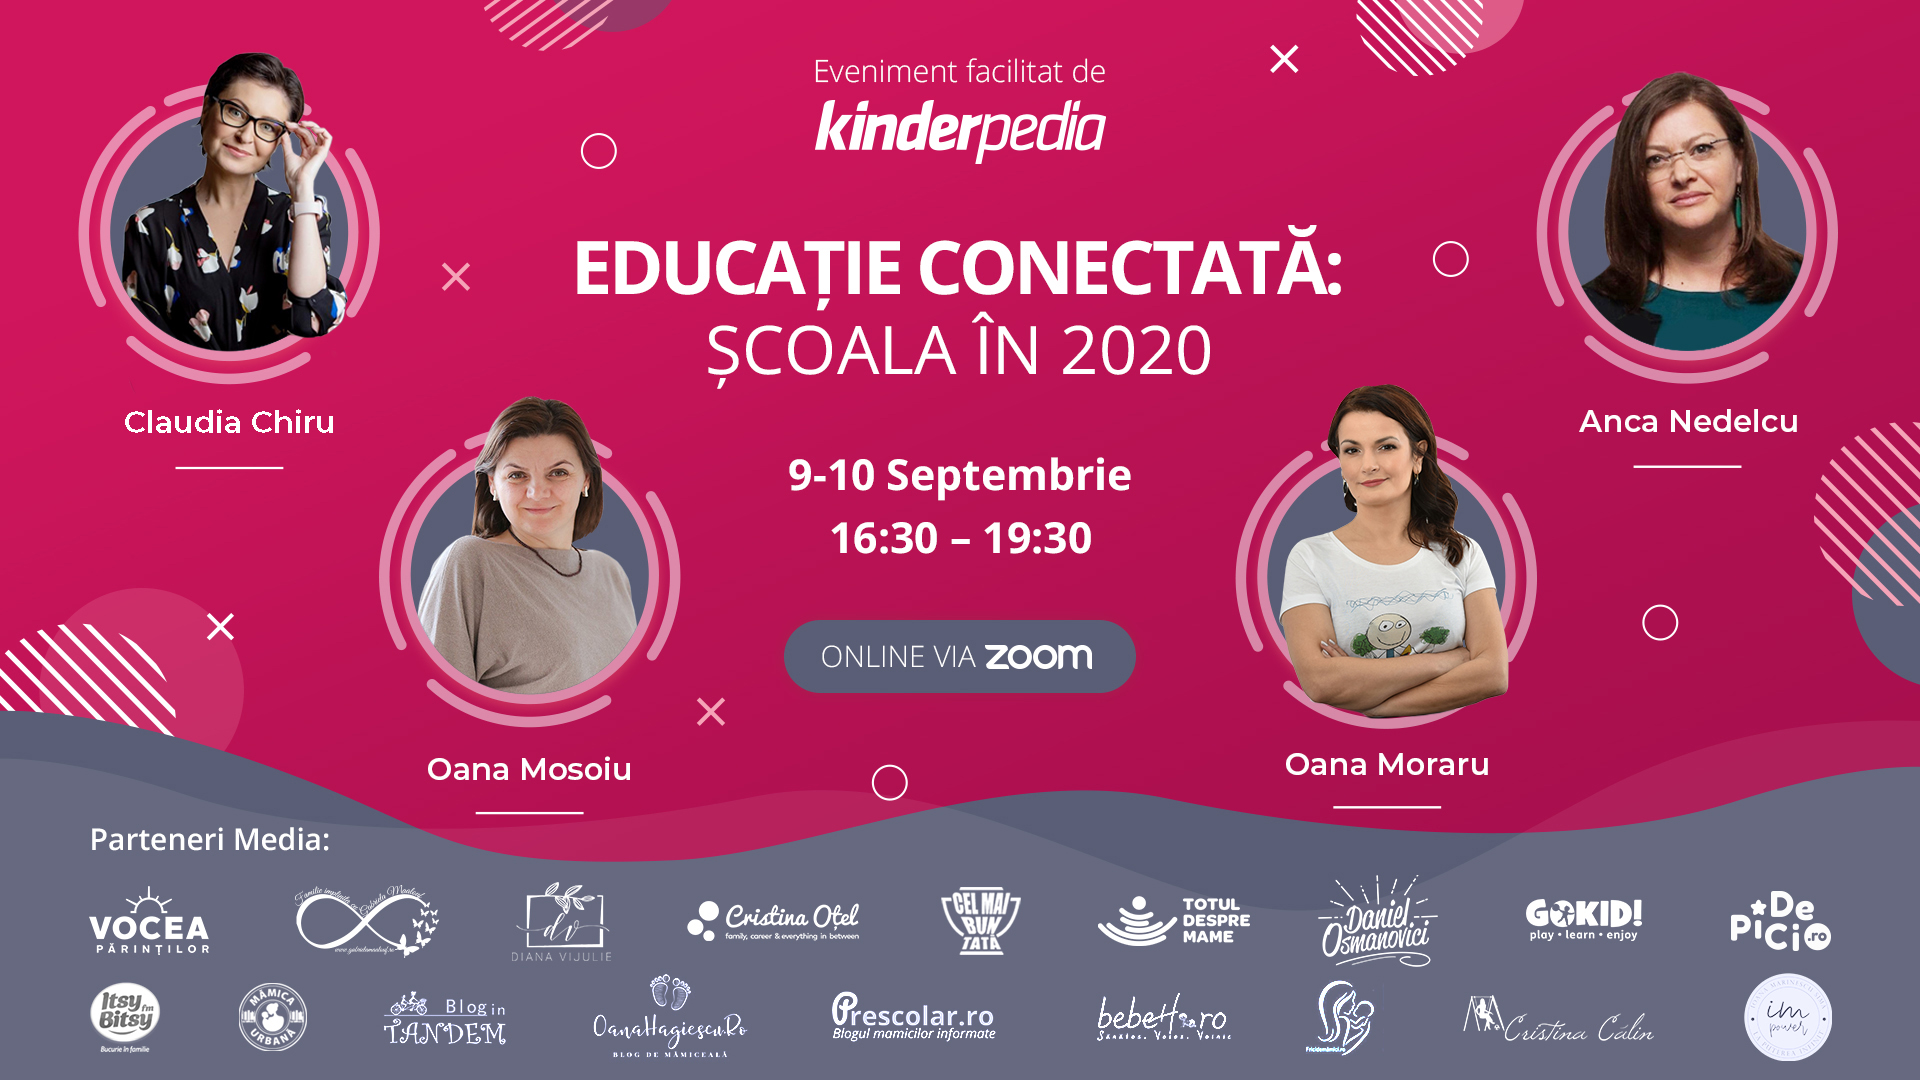 Educație conectată: Școala în 2020, conferință online despre întoarcerea la școală și integrarea tehnologiei în educație